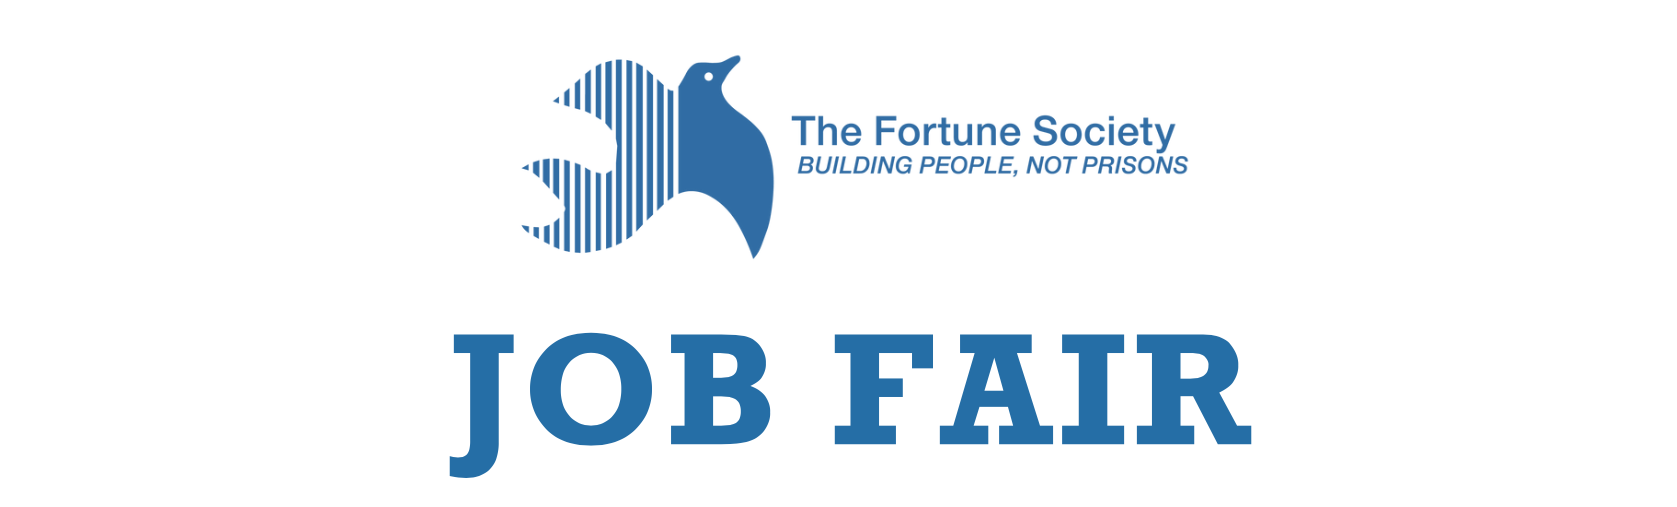 The Fortune Society Job Fair